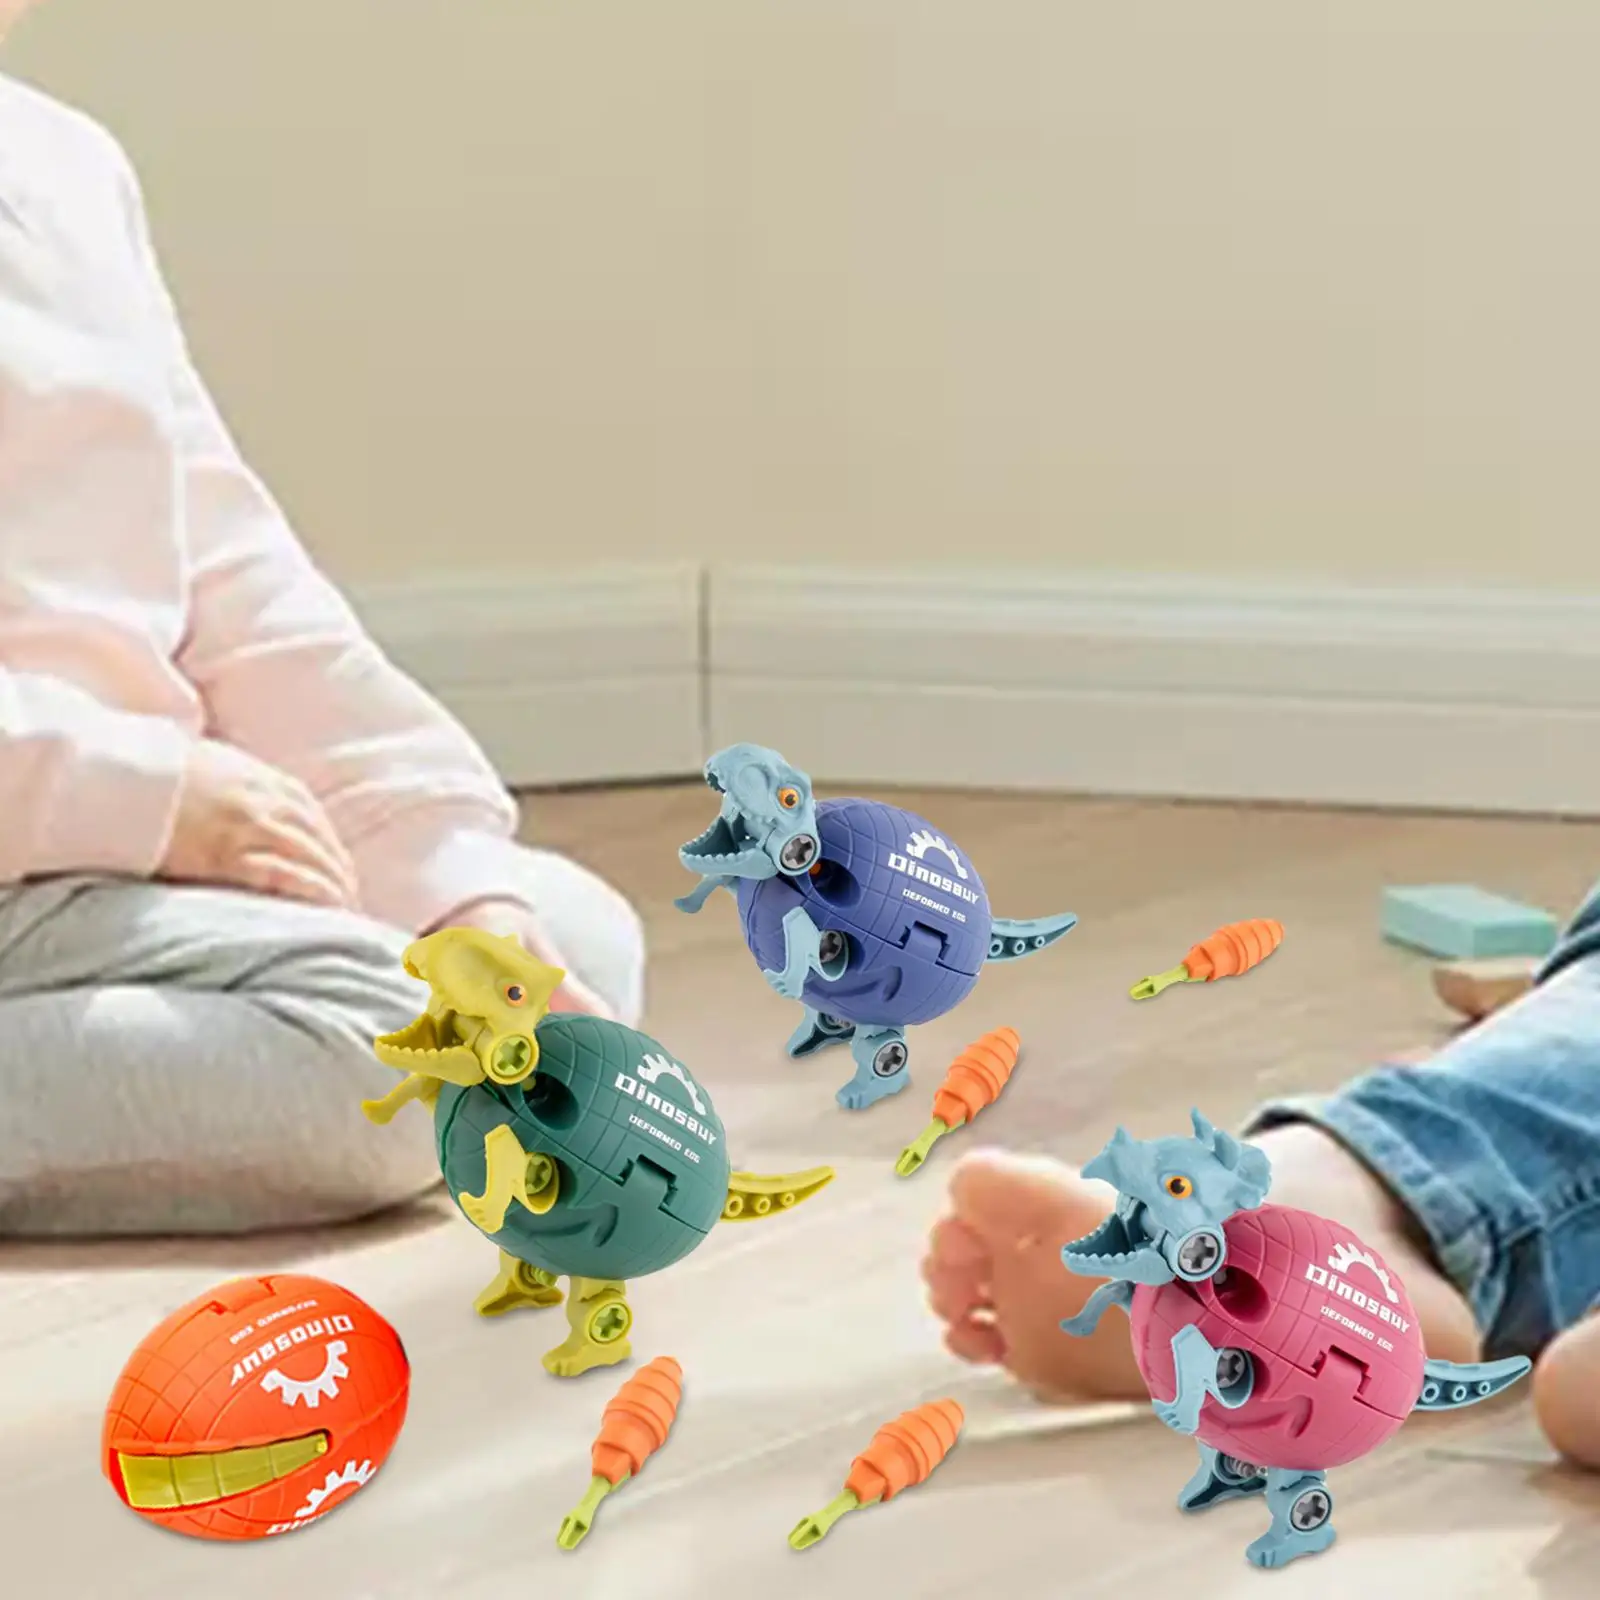 Детские игрушки-диноцератопсы для разборки на 4 части мальчиков и девочек от 3 лет